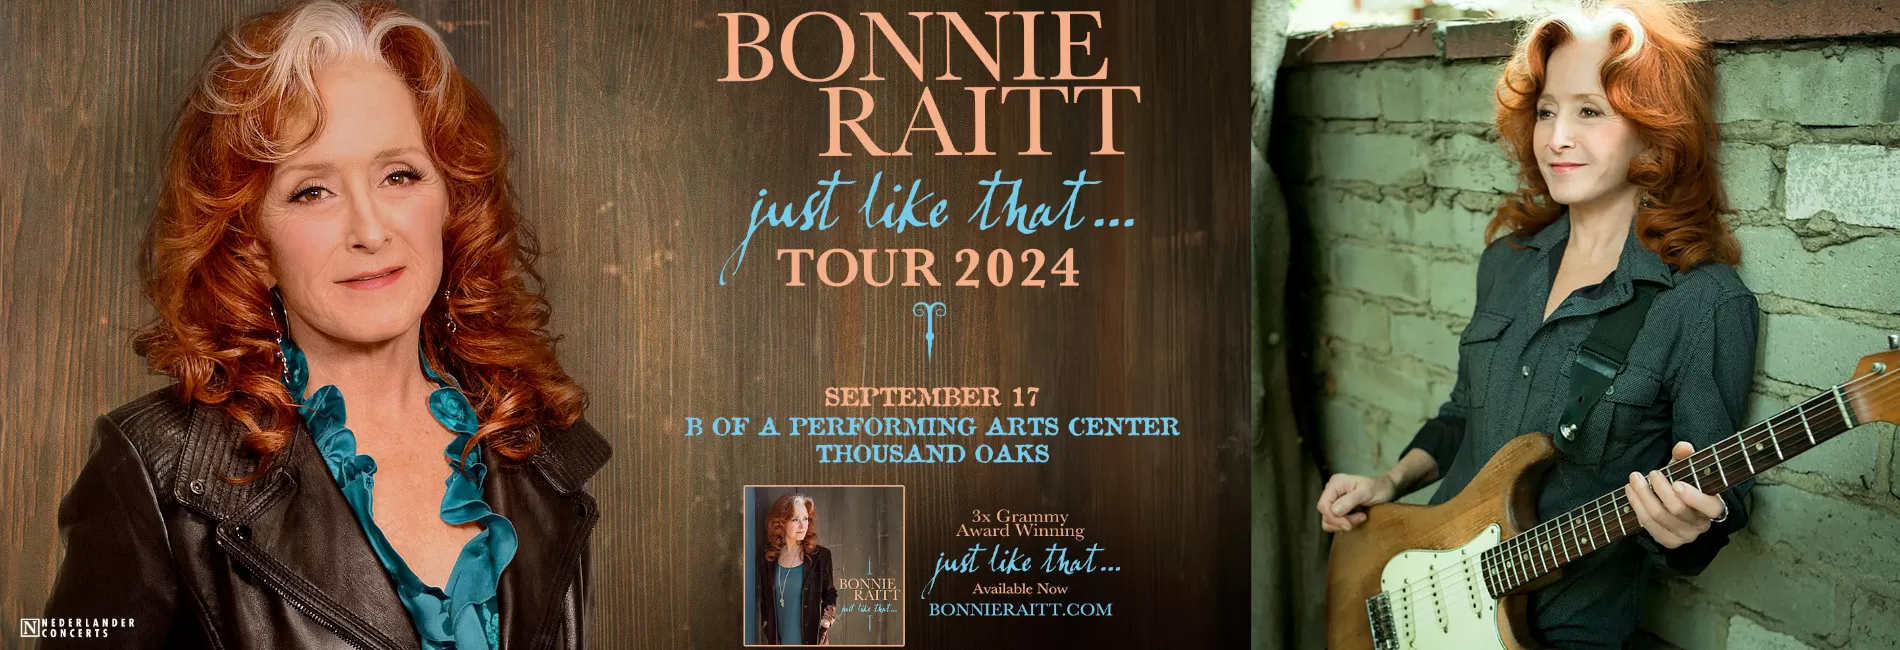 Bonnie Raitt Just Like That.. Tour 2024